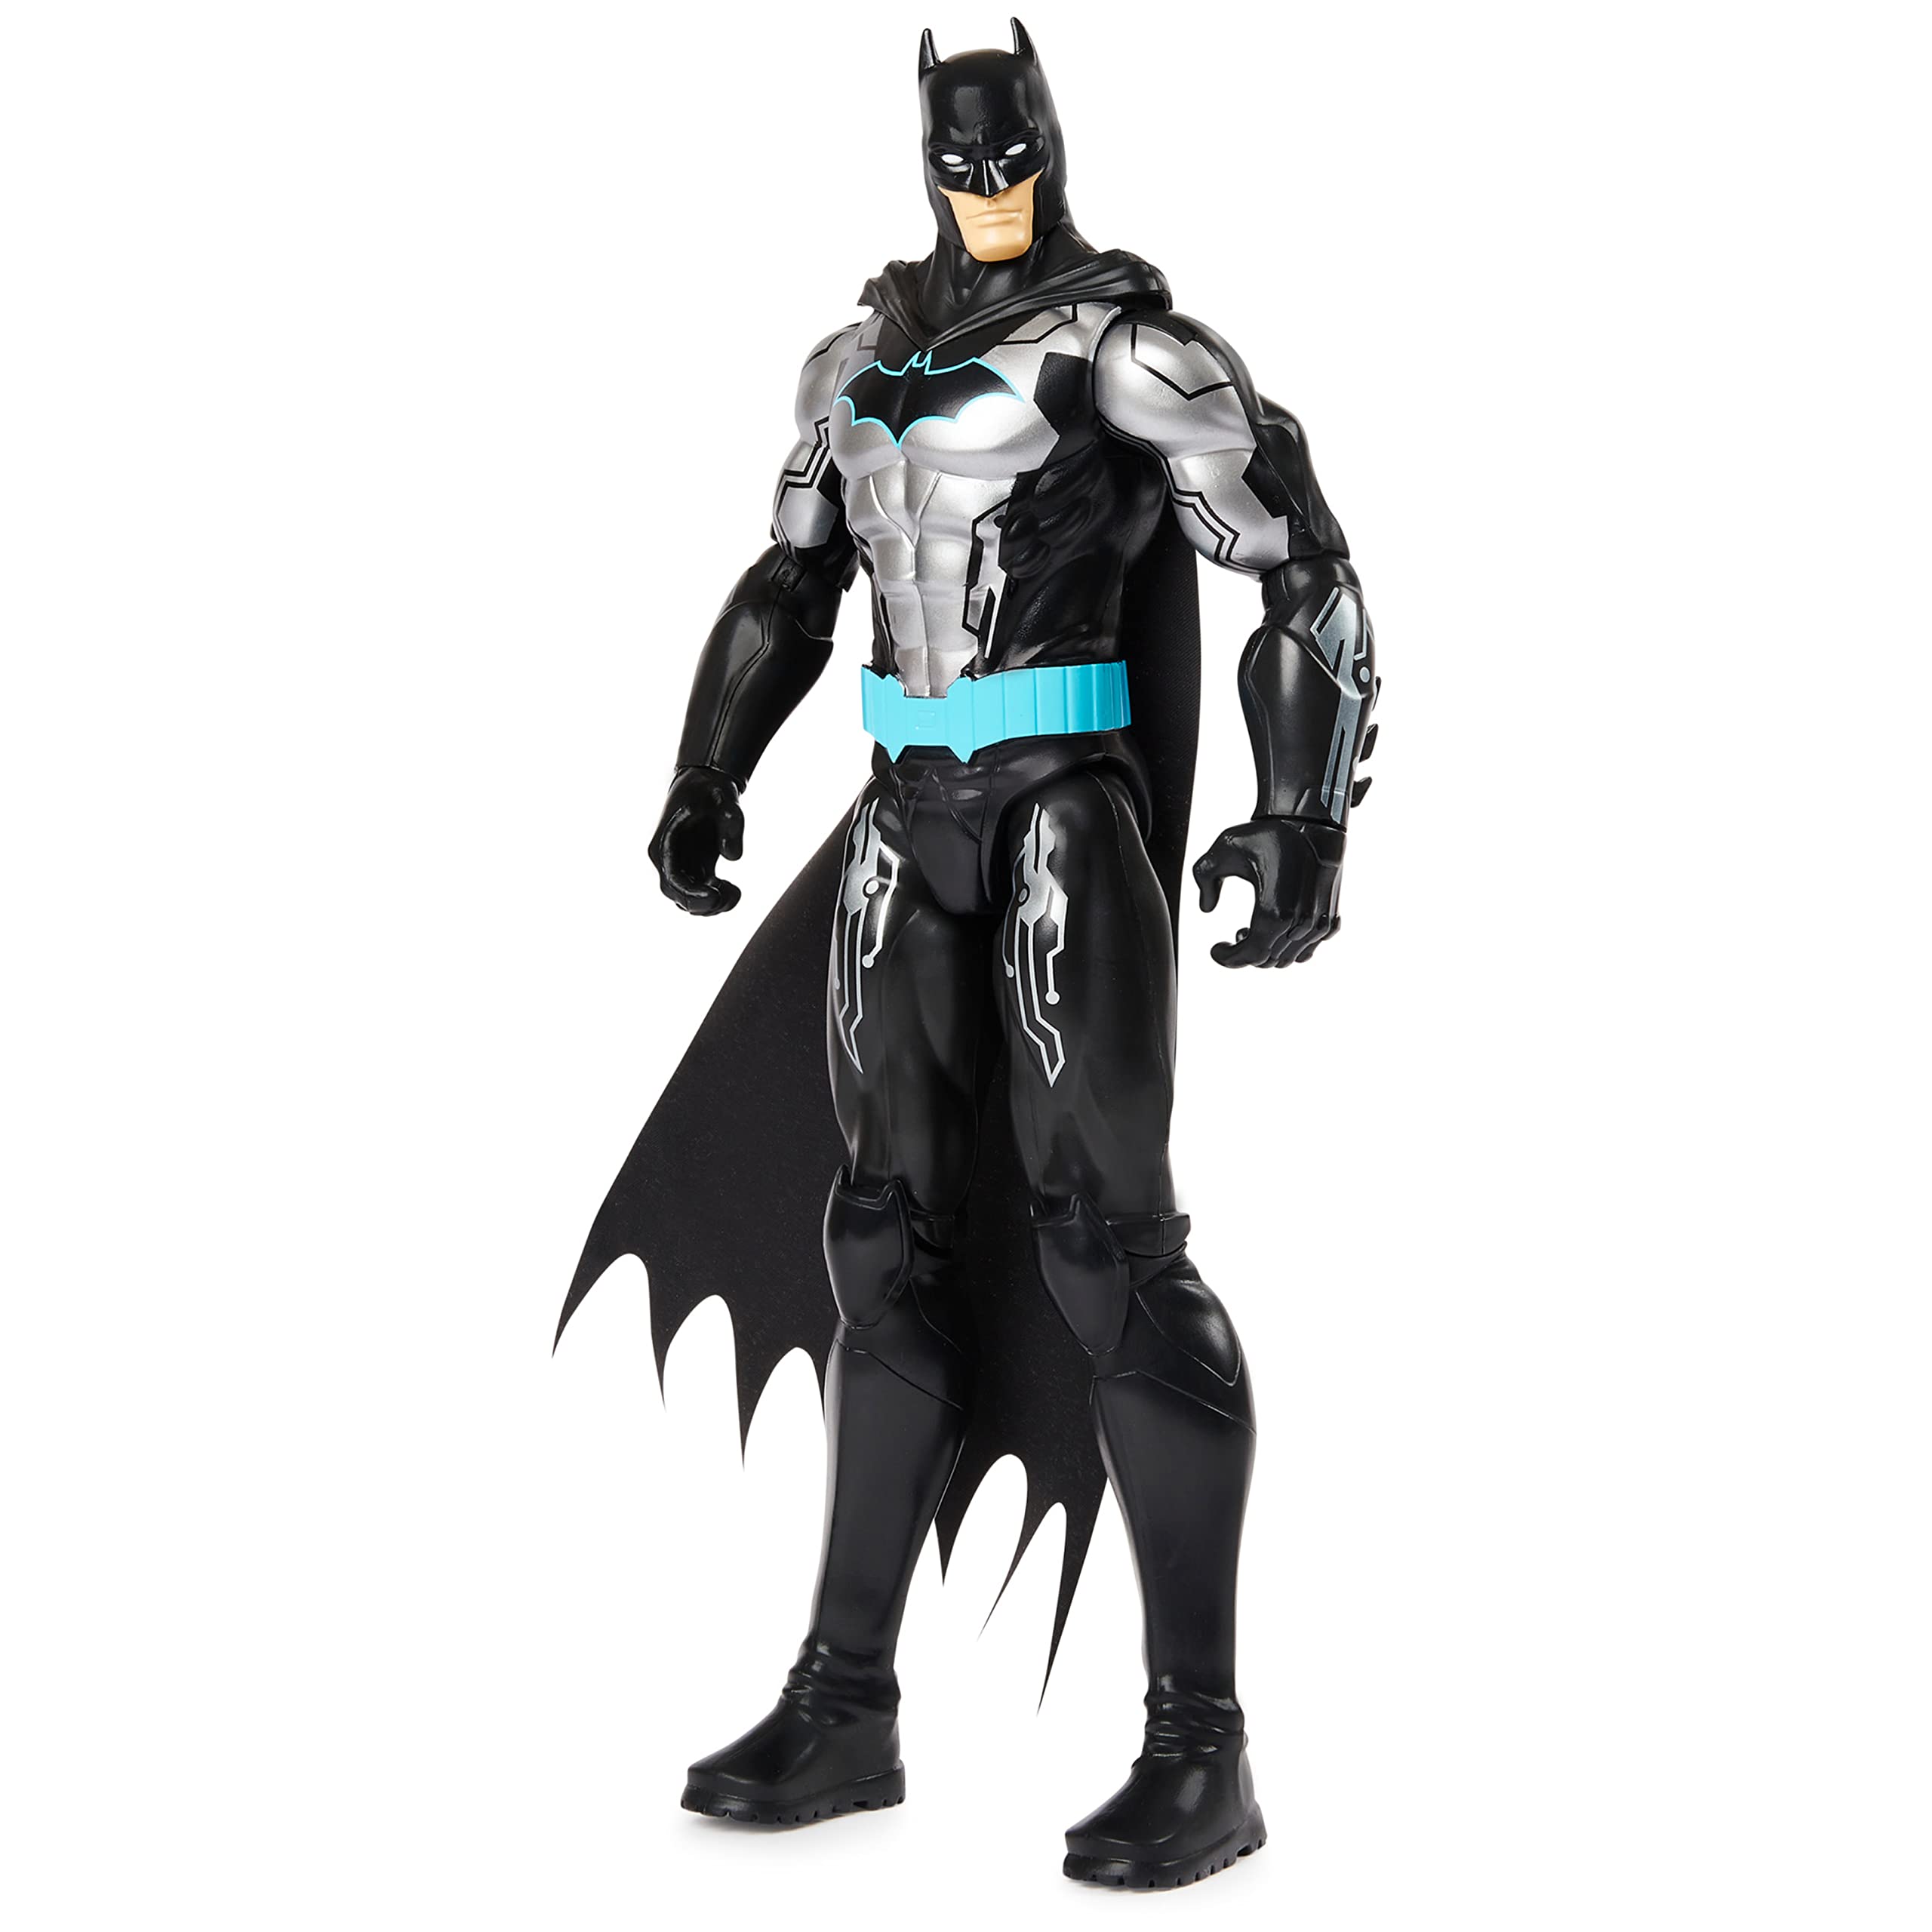 Batman 12-inch Bat-Tech Action Figure (Black/Blue Suit), Kids Toys for Boys Aged 3 and up